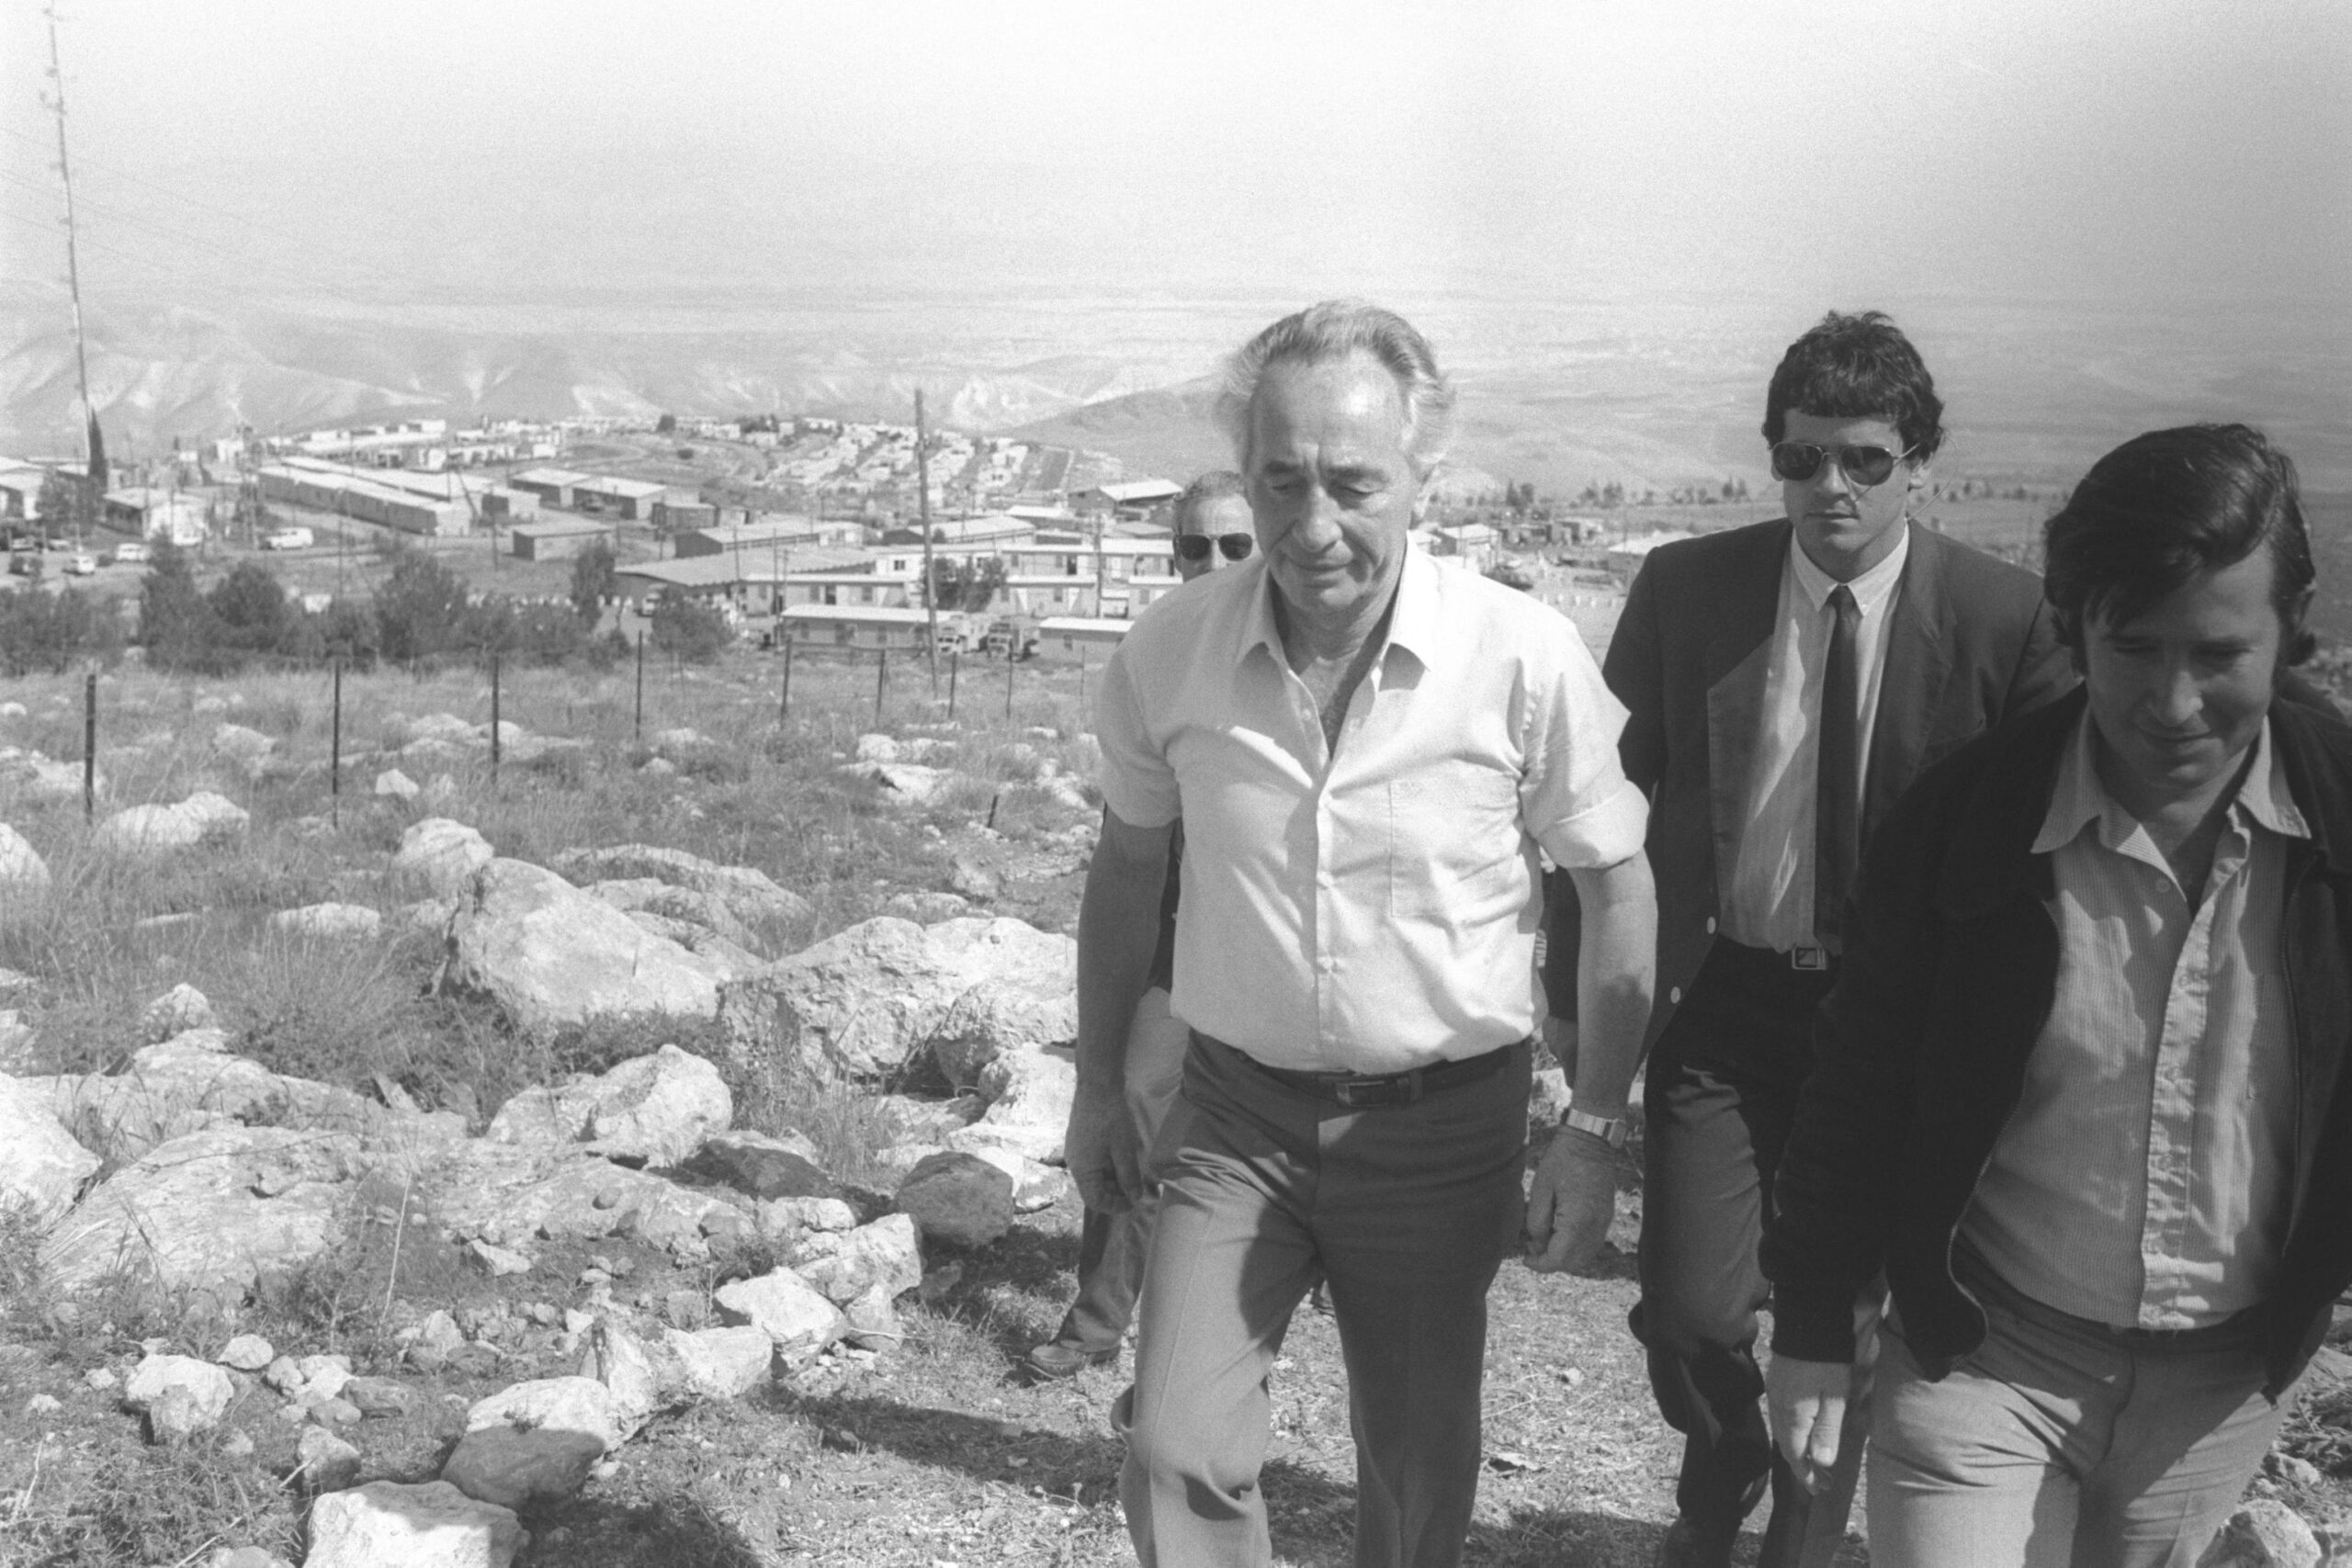 ראש הממשלה שמעון פרס מבקר בהתנחלות מעלה אפרים, 1985 (צילום: חנניה הרמן, לע"מ)